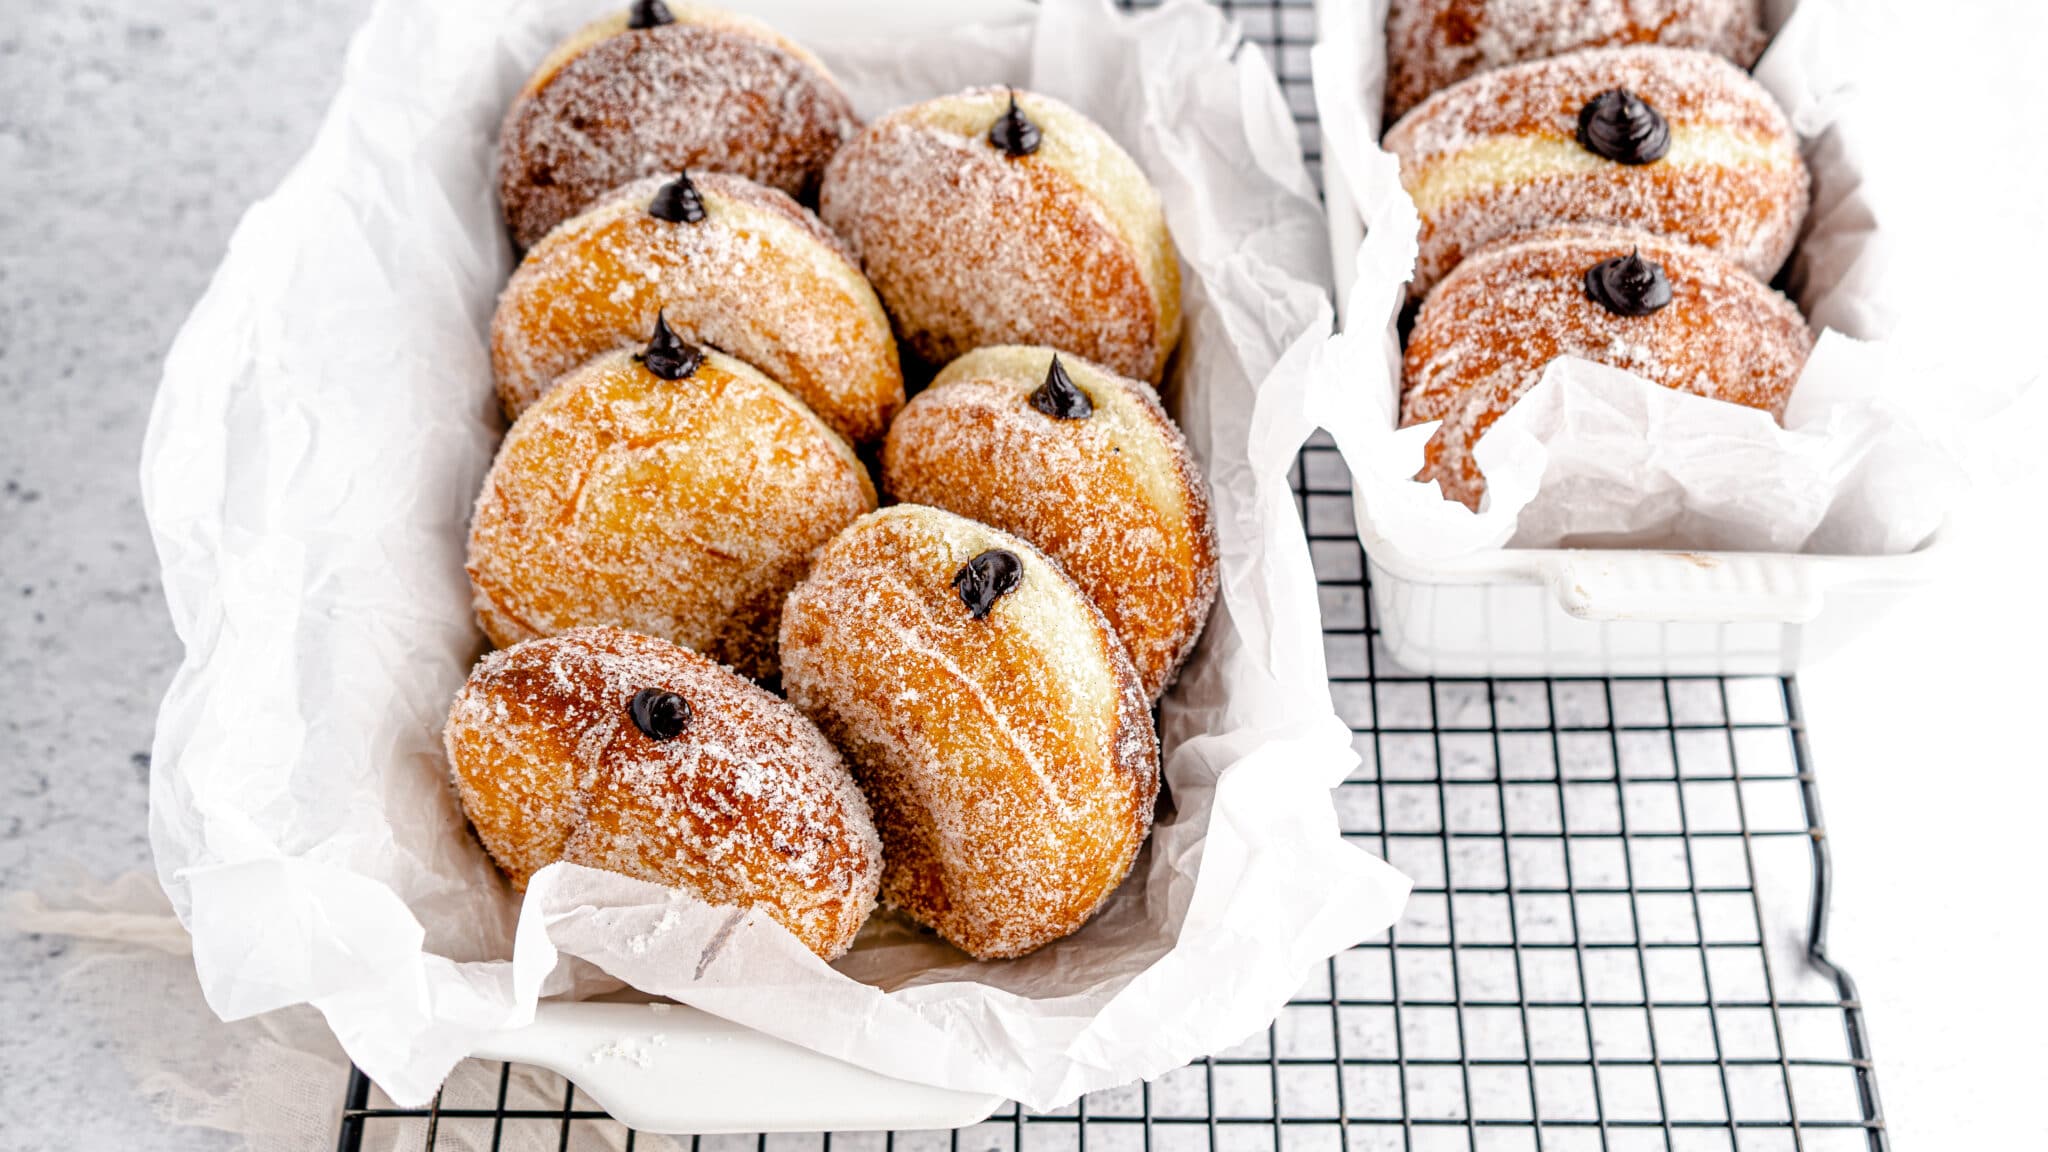 https://www.rodellekitchen.com/wp-content/uploads/2021/08/Dark-Chocolate-Ganache-Filled-Donuts-with-Vanilla-Sugar-hero-2-scaled.jpg